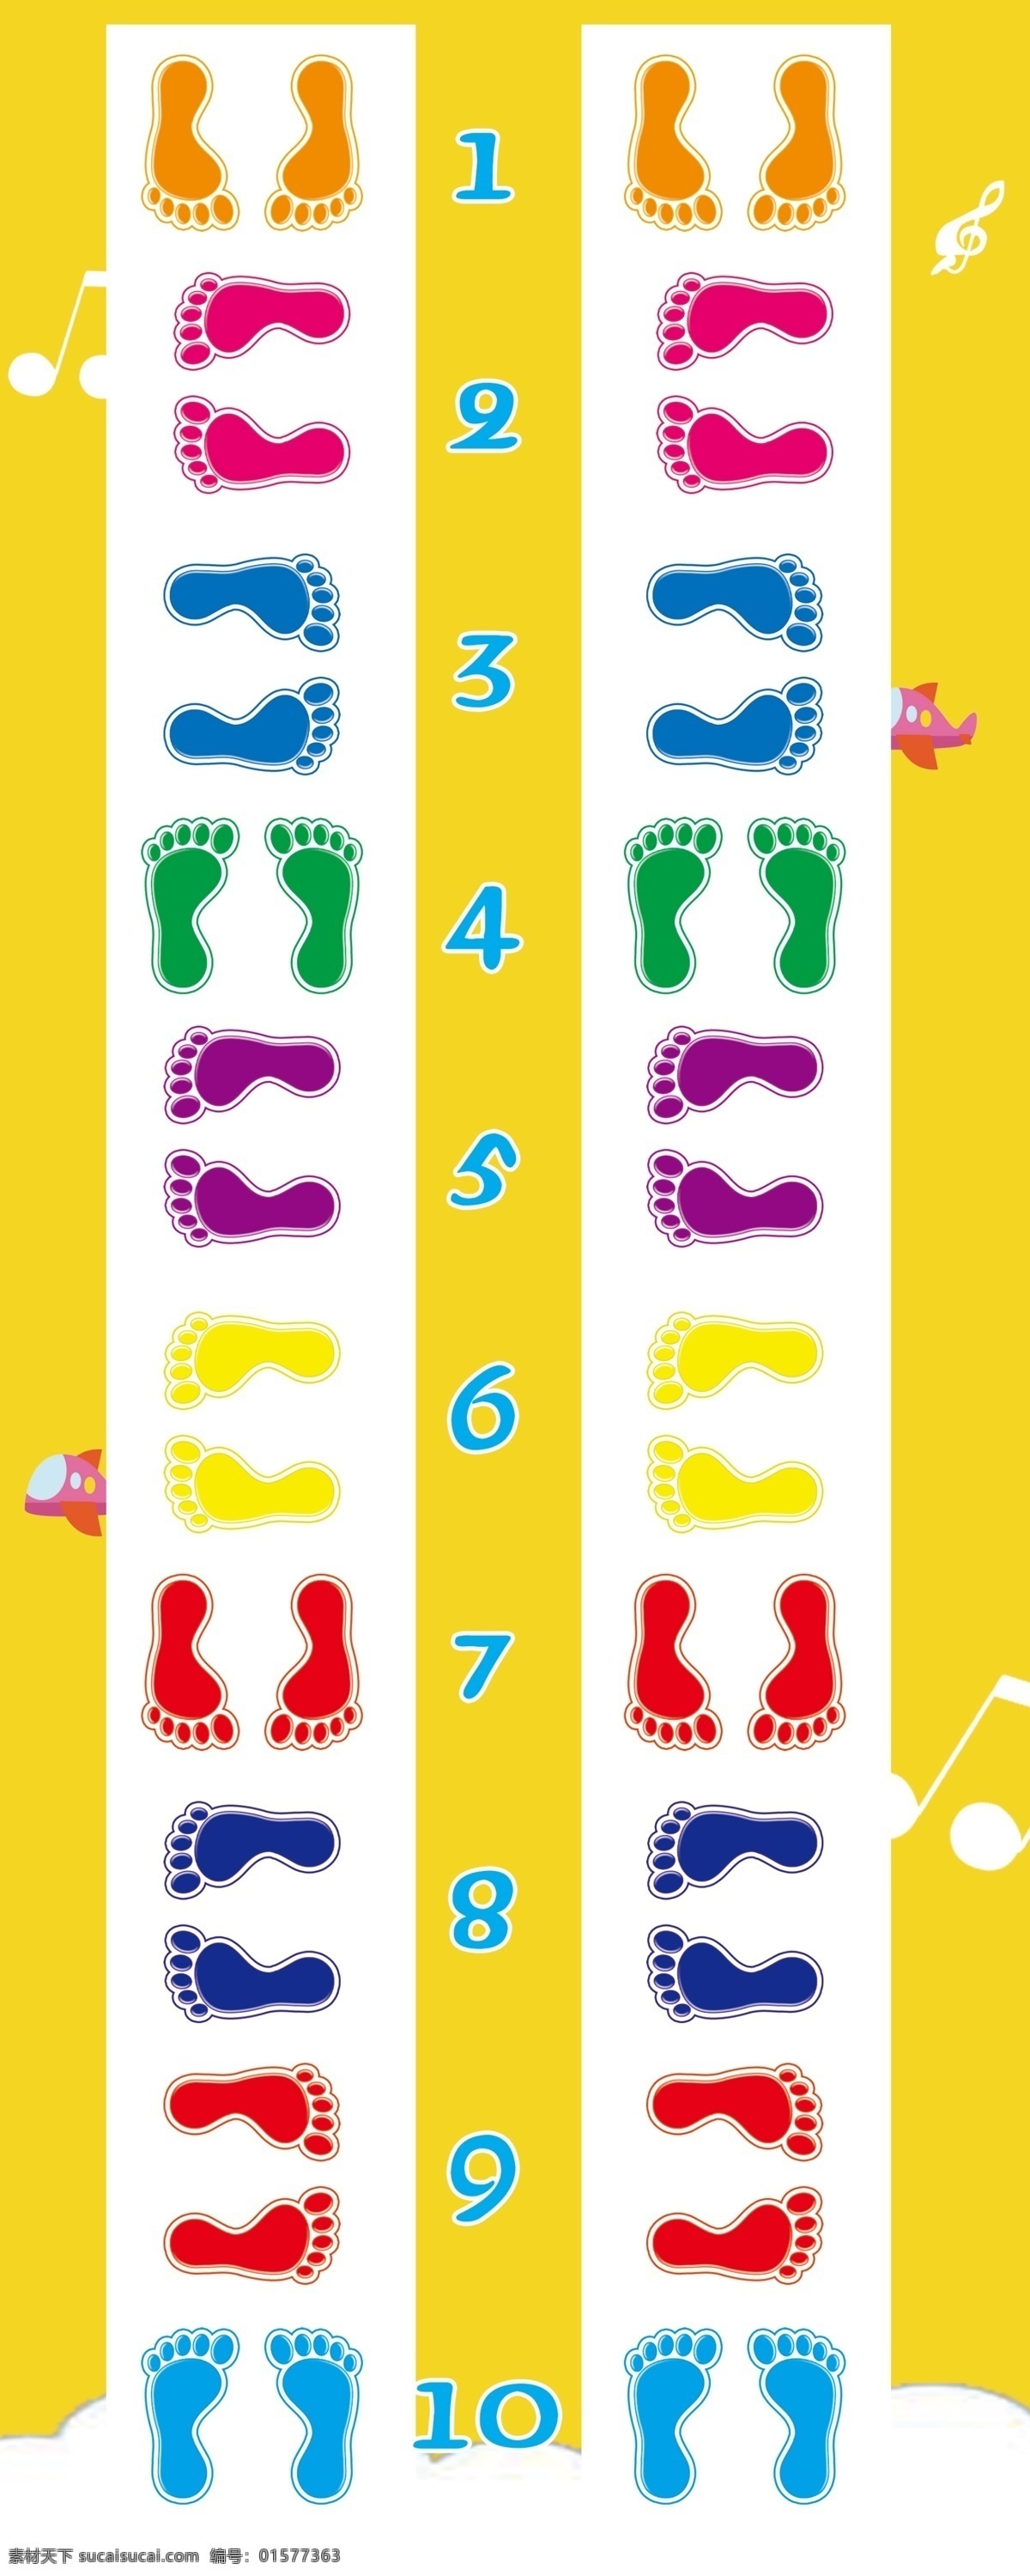 脚印 手脚并用 游戏道具 幼儿园 手脚印